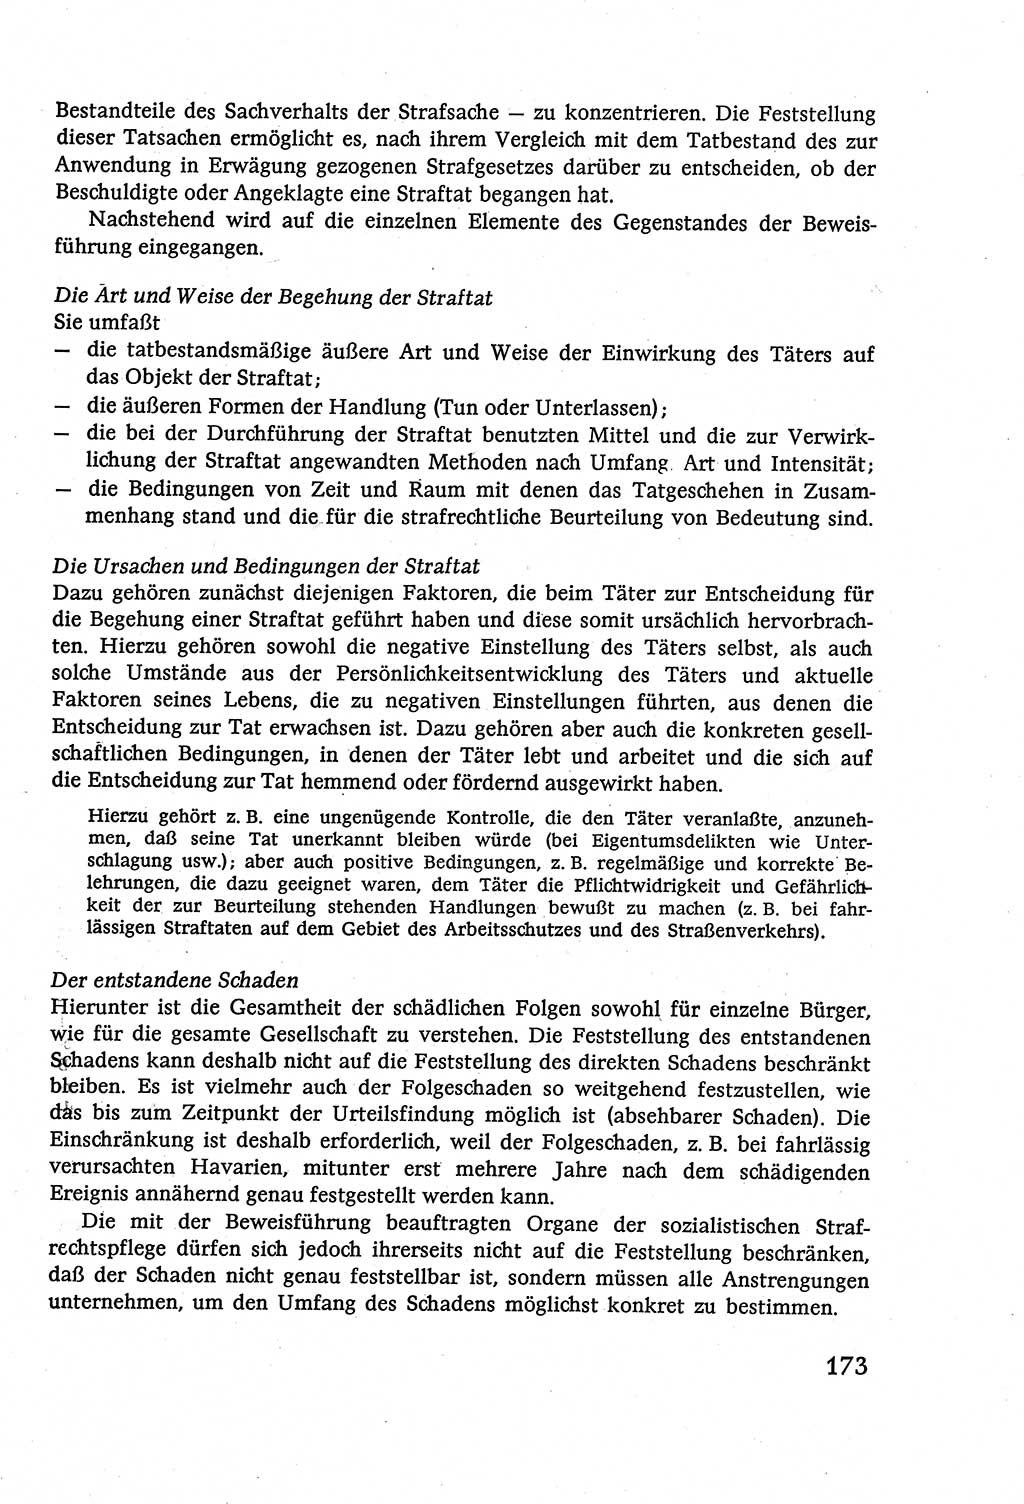 Strafverfahrensrecht [Deutsche Demokratische Republik (DDR)], Lehrbuch 1977, Seite 173 (Strafverf.-R. DDR Lb. 1977, S. 173)